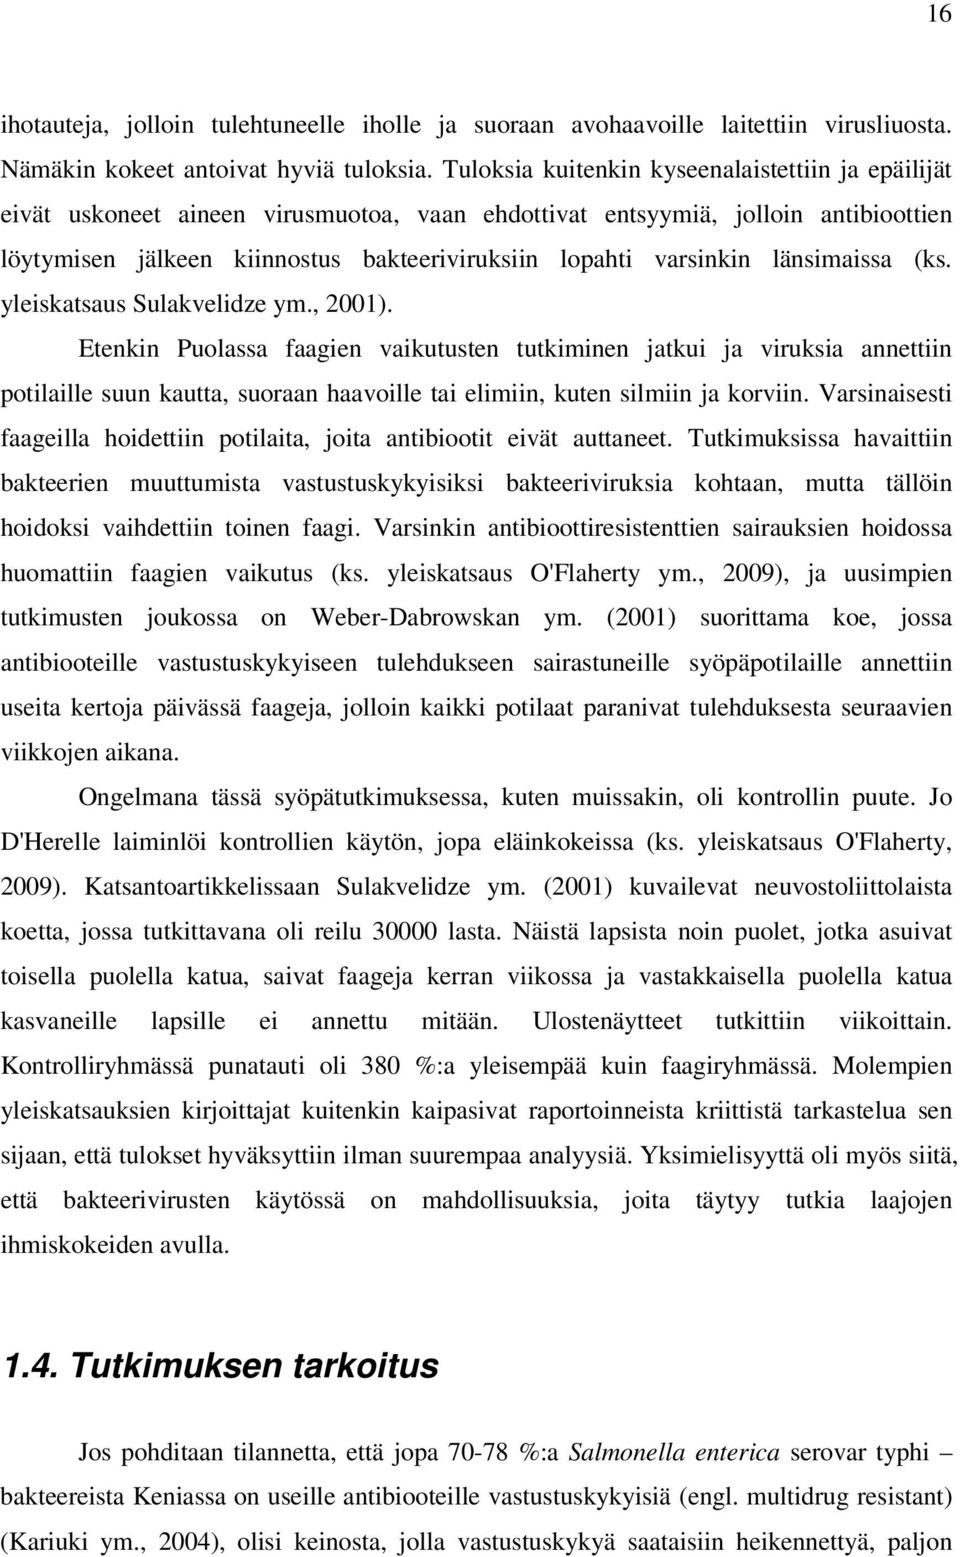 varsinkin länsimaissa (ks. yleiskatsaus Sulakvelidze ym., 2001).